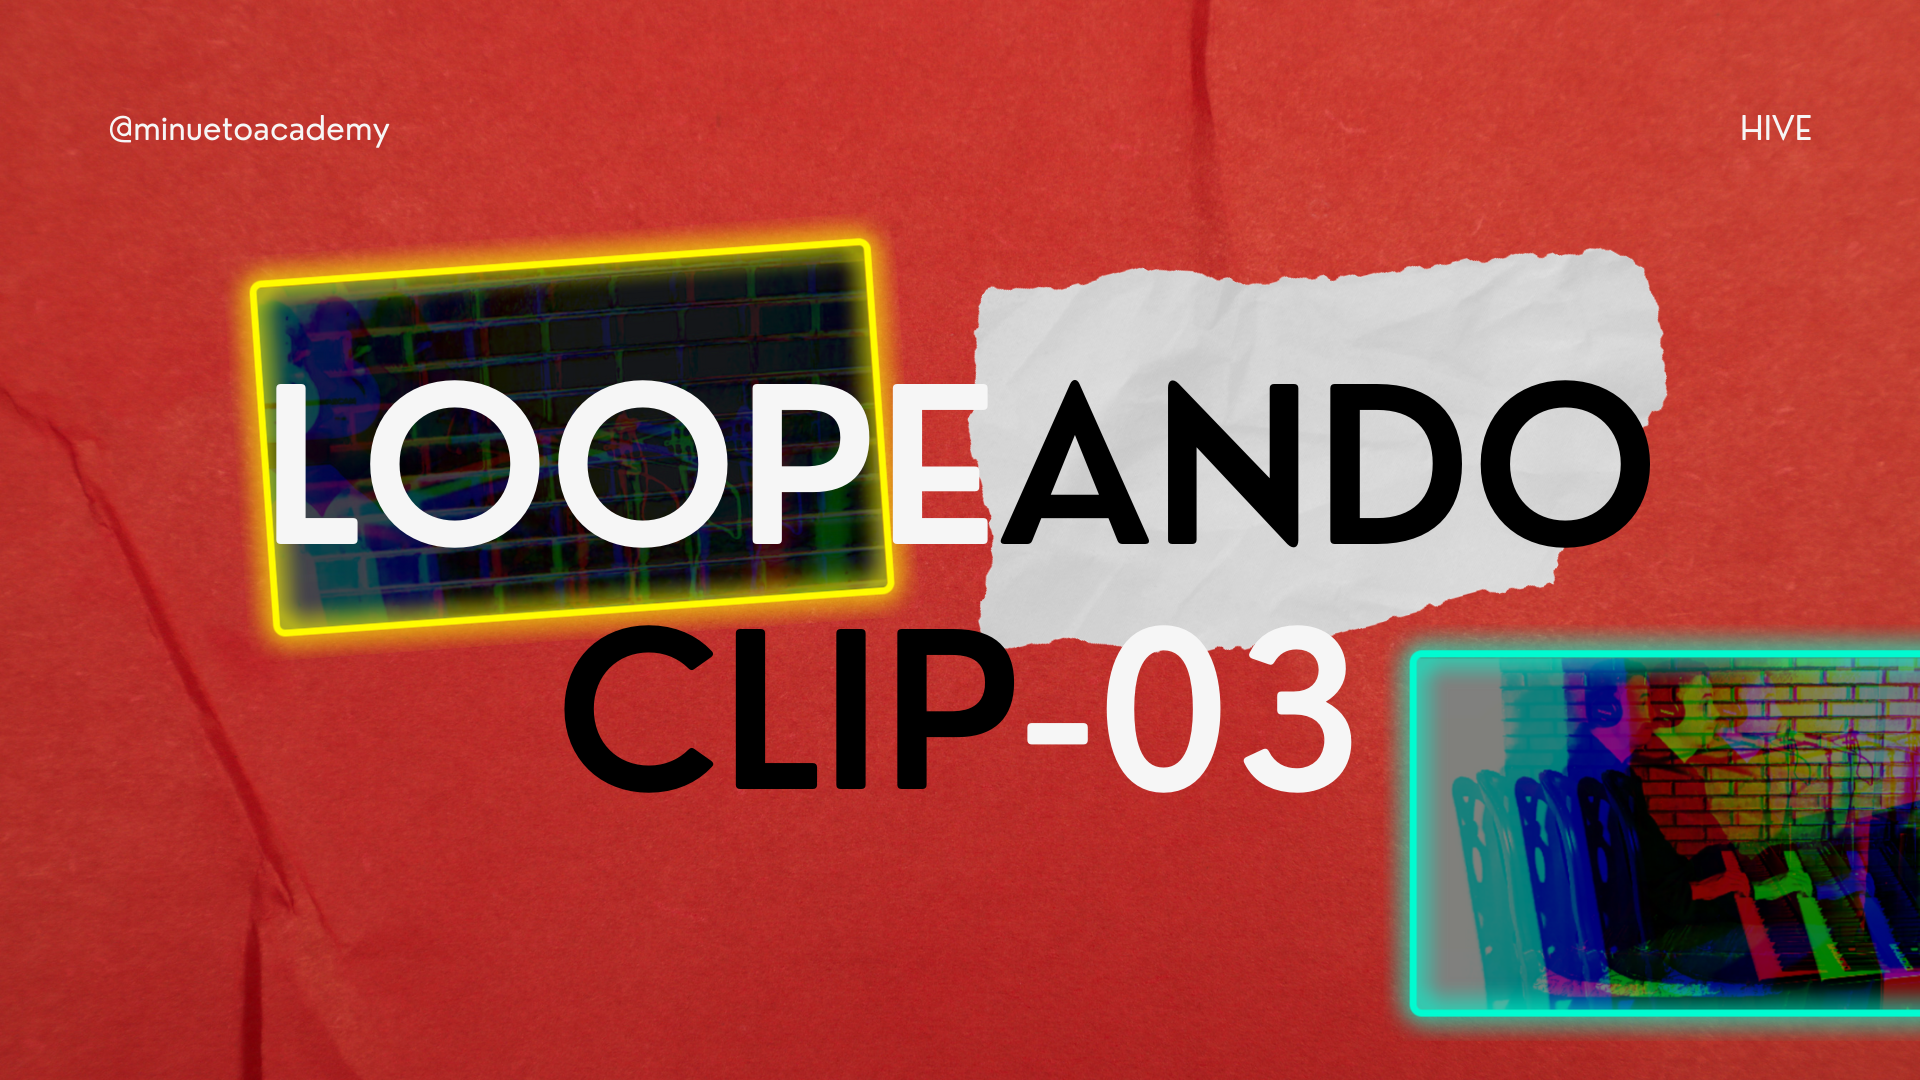 Loopeando Clip-03.png